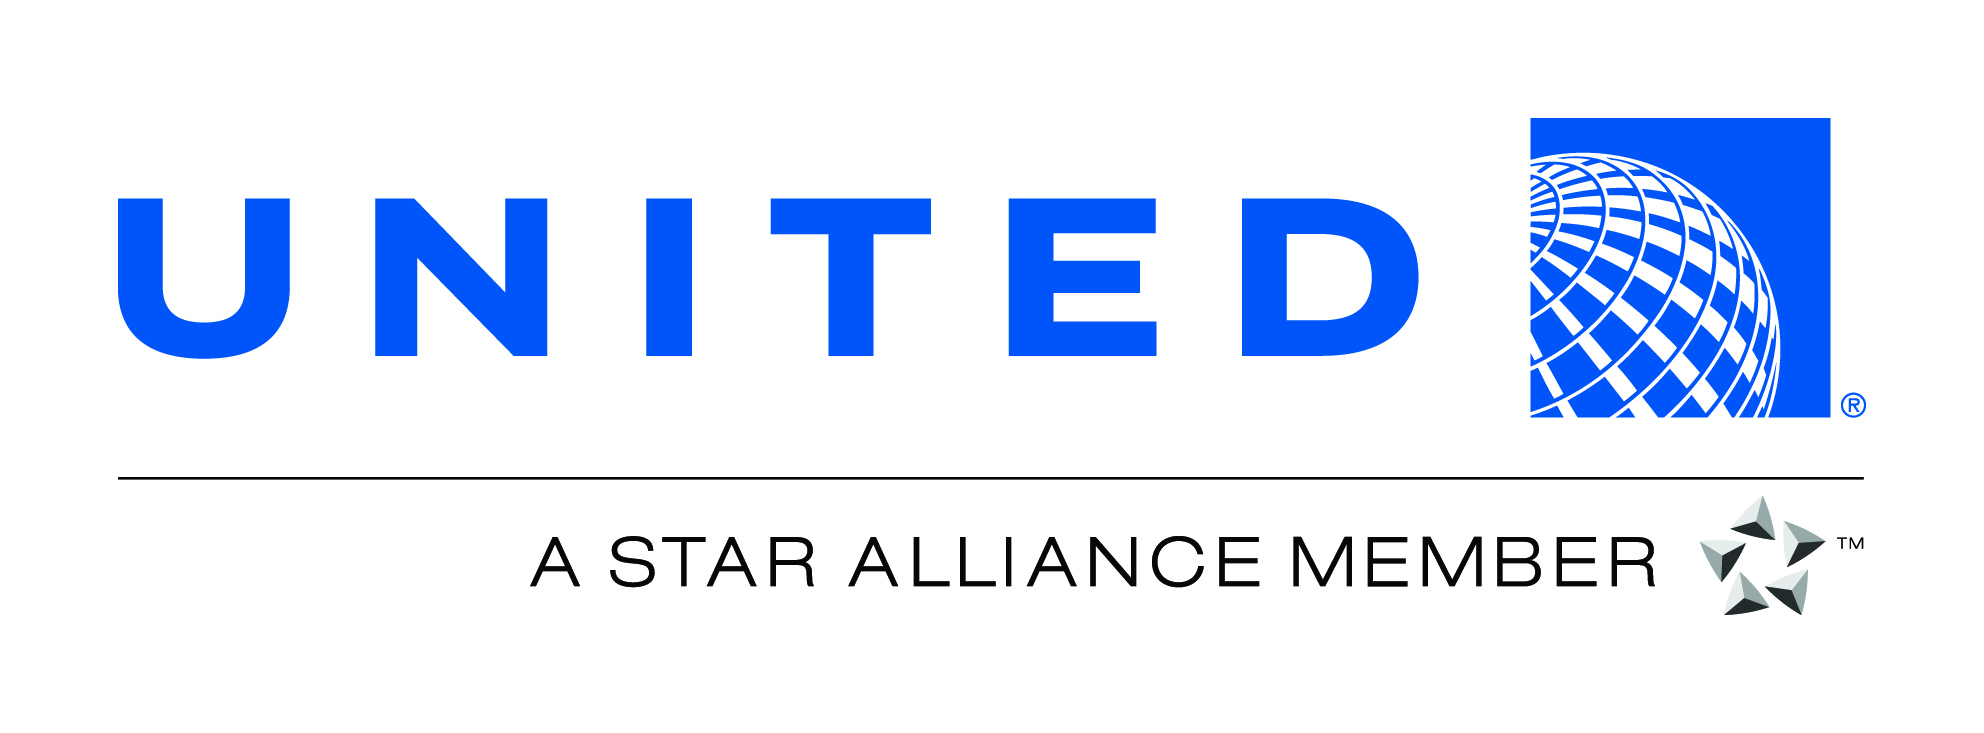 unitedstaralliance_logoa01.jpg